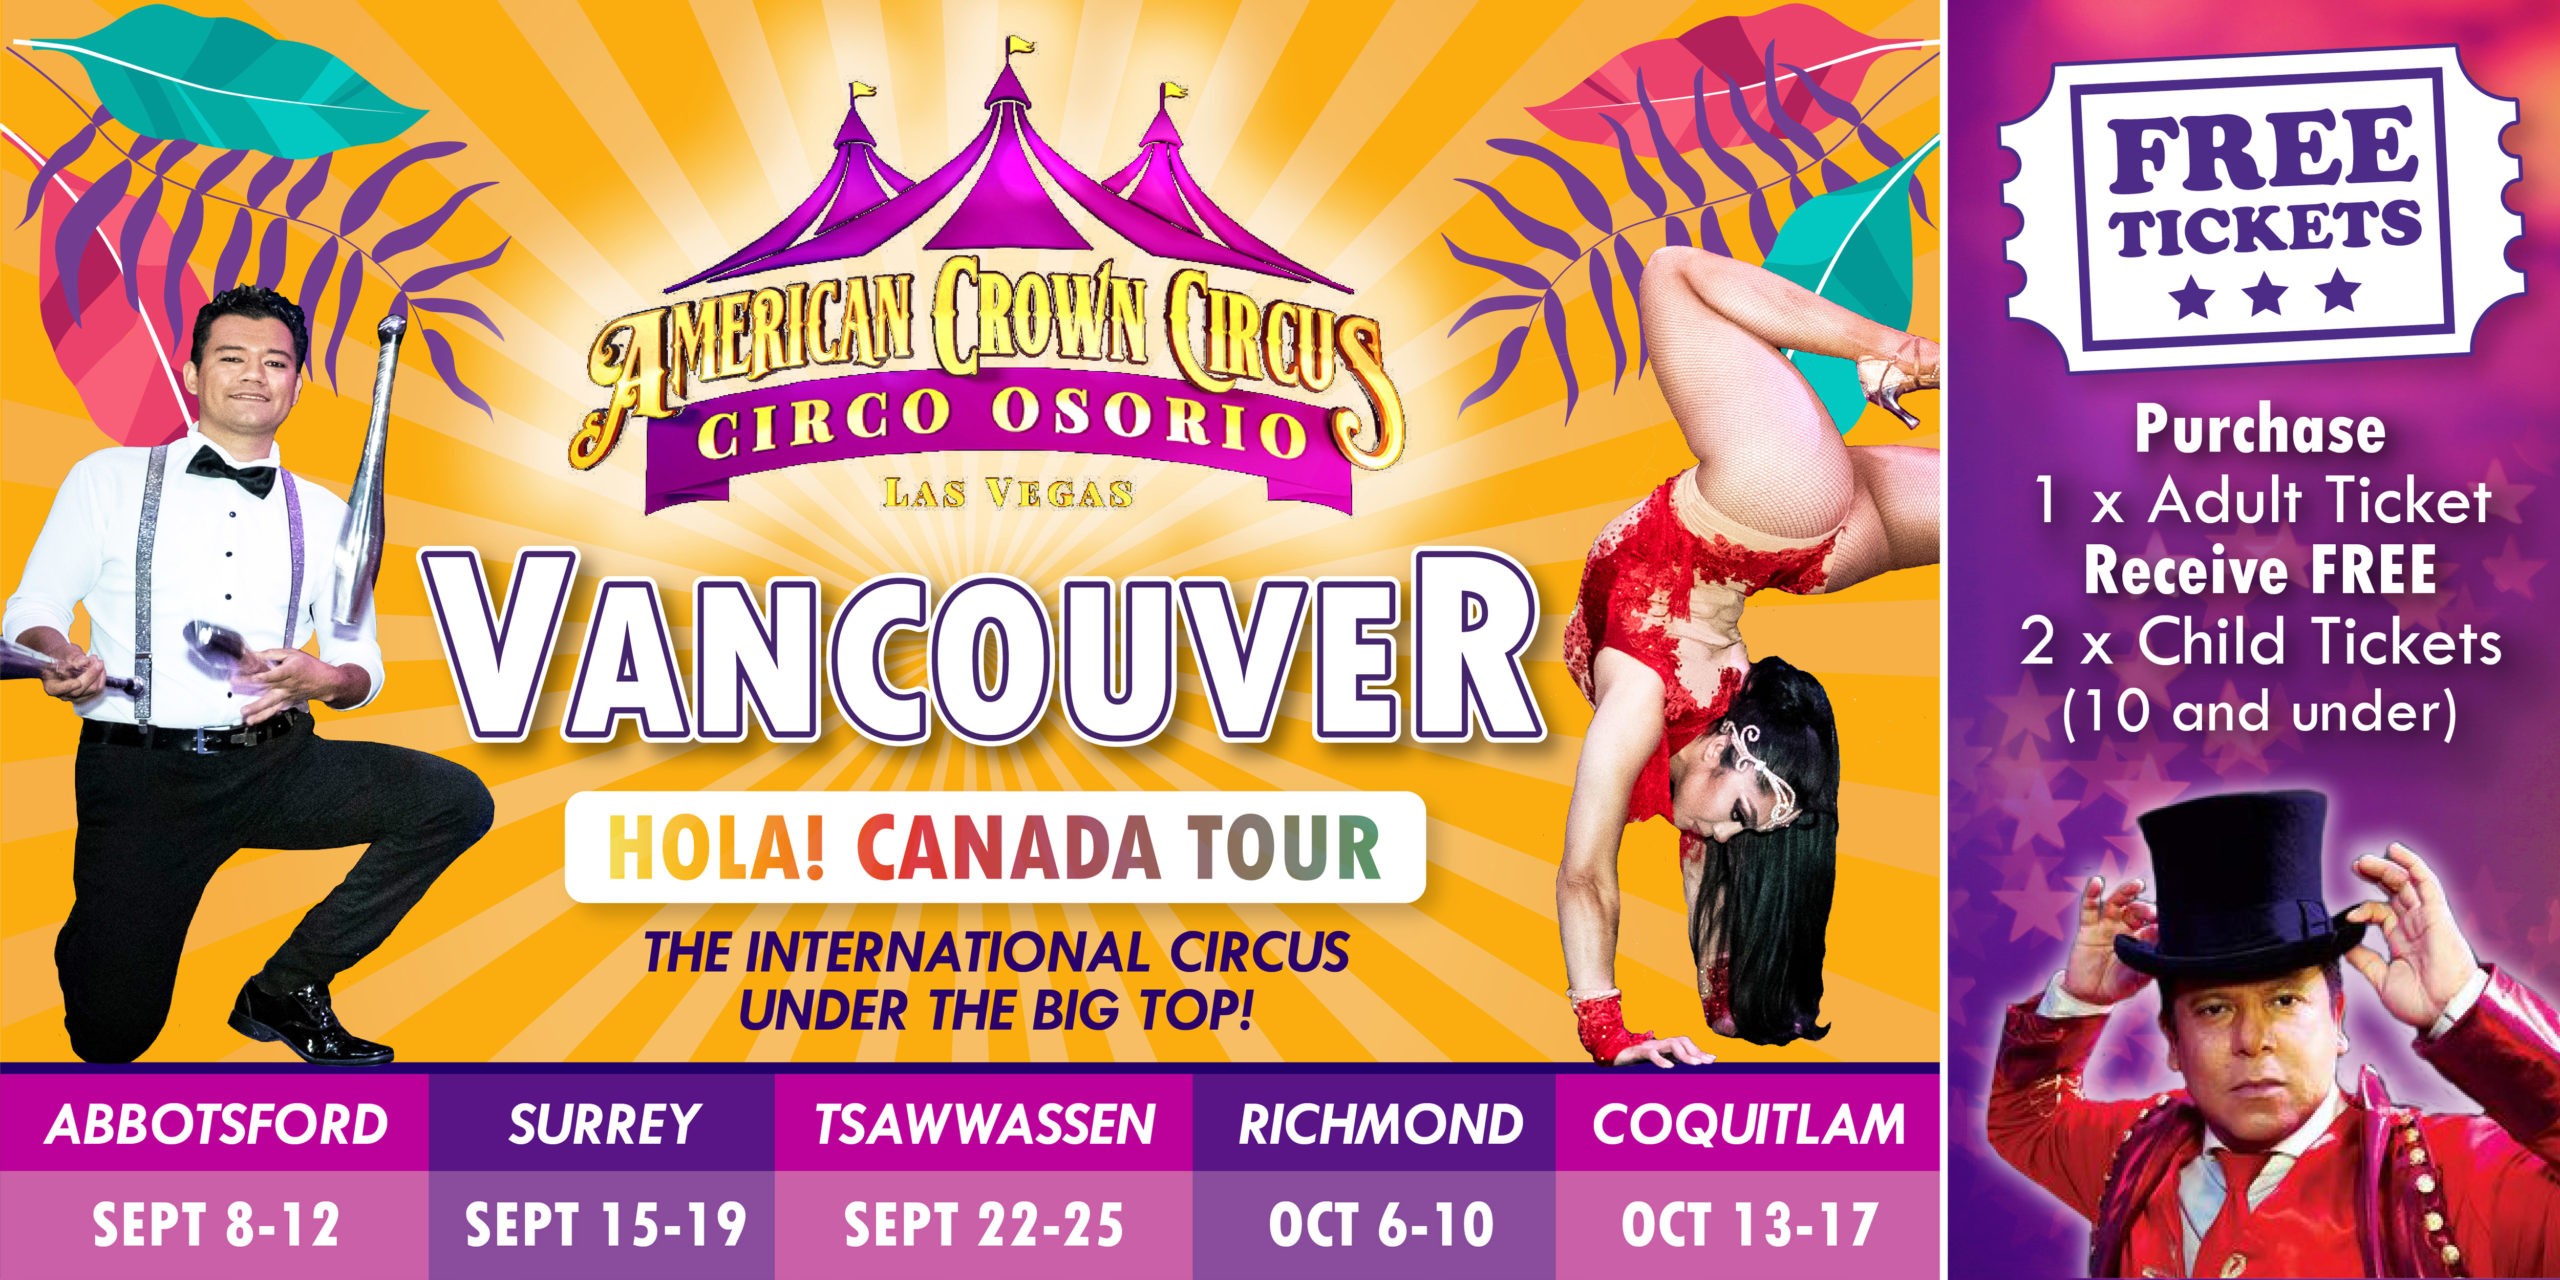 American Crown Circus - Circo Osorio